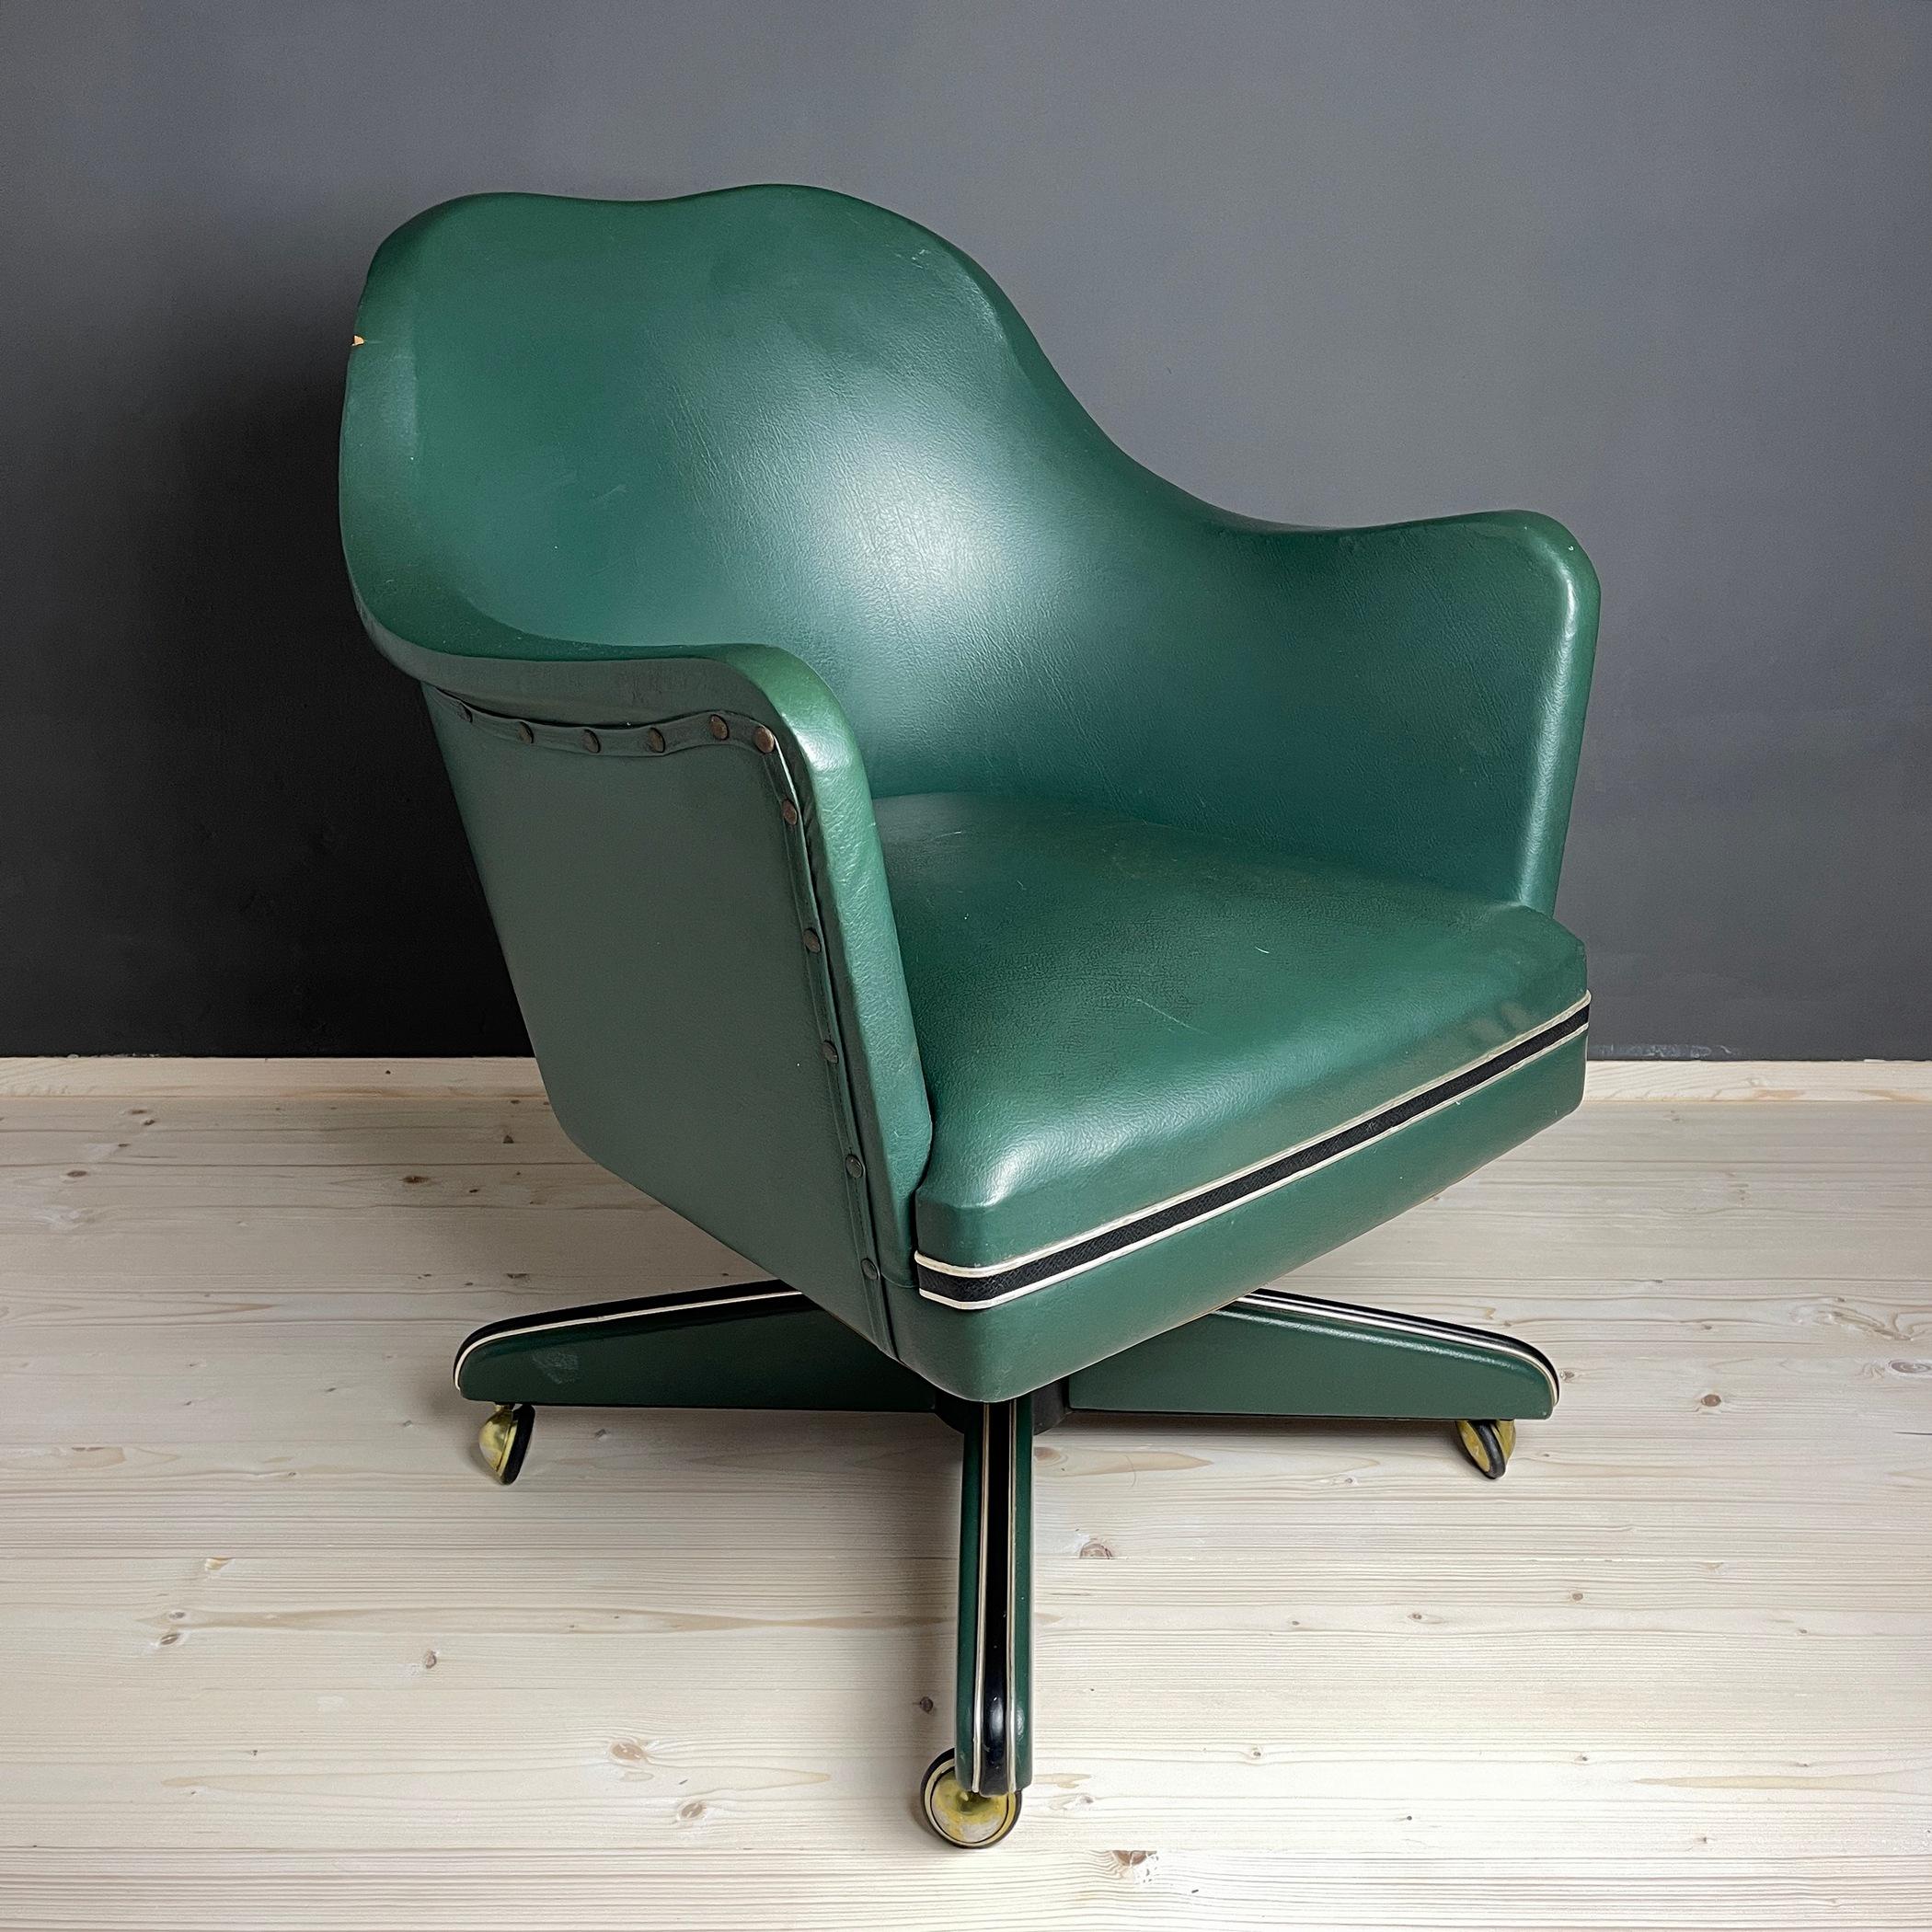 Grüner Bürodrehstuhl von Umberto Mascagni aus der Mitte des Jahrhunderts, hergestellt in Italien in den 1950er Jahren. Das für diesen Sessel von Umberto Mascagni verwendete Vinyl war in den 1950er Jahren ein sehr beliebtes MATERIAL. Der Stuhl hat